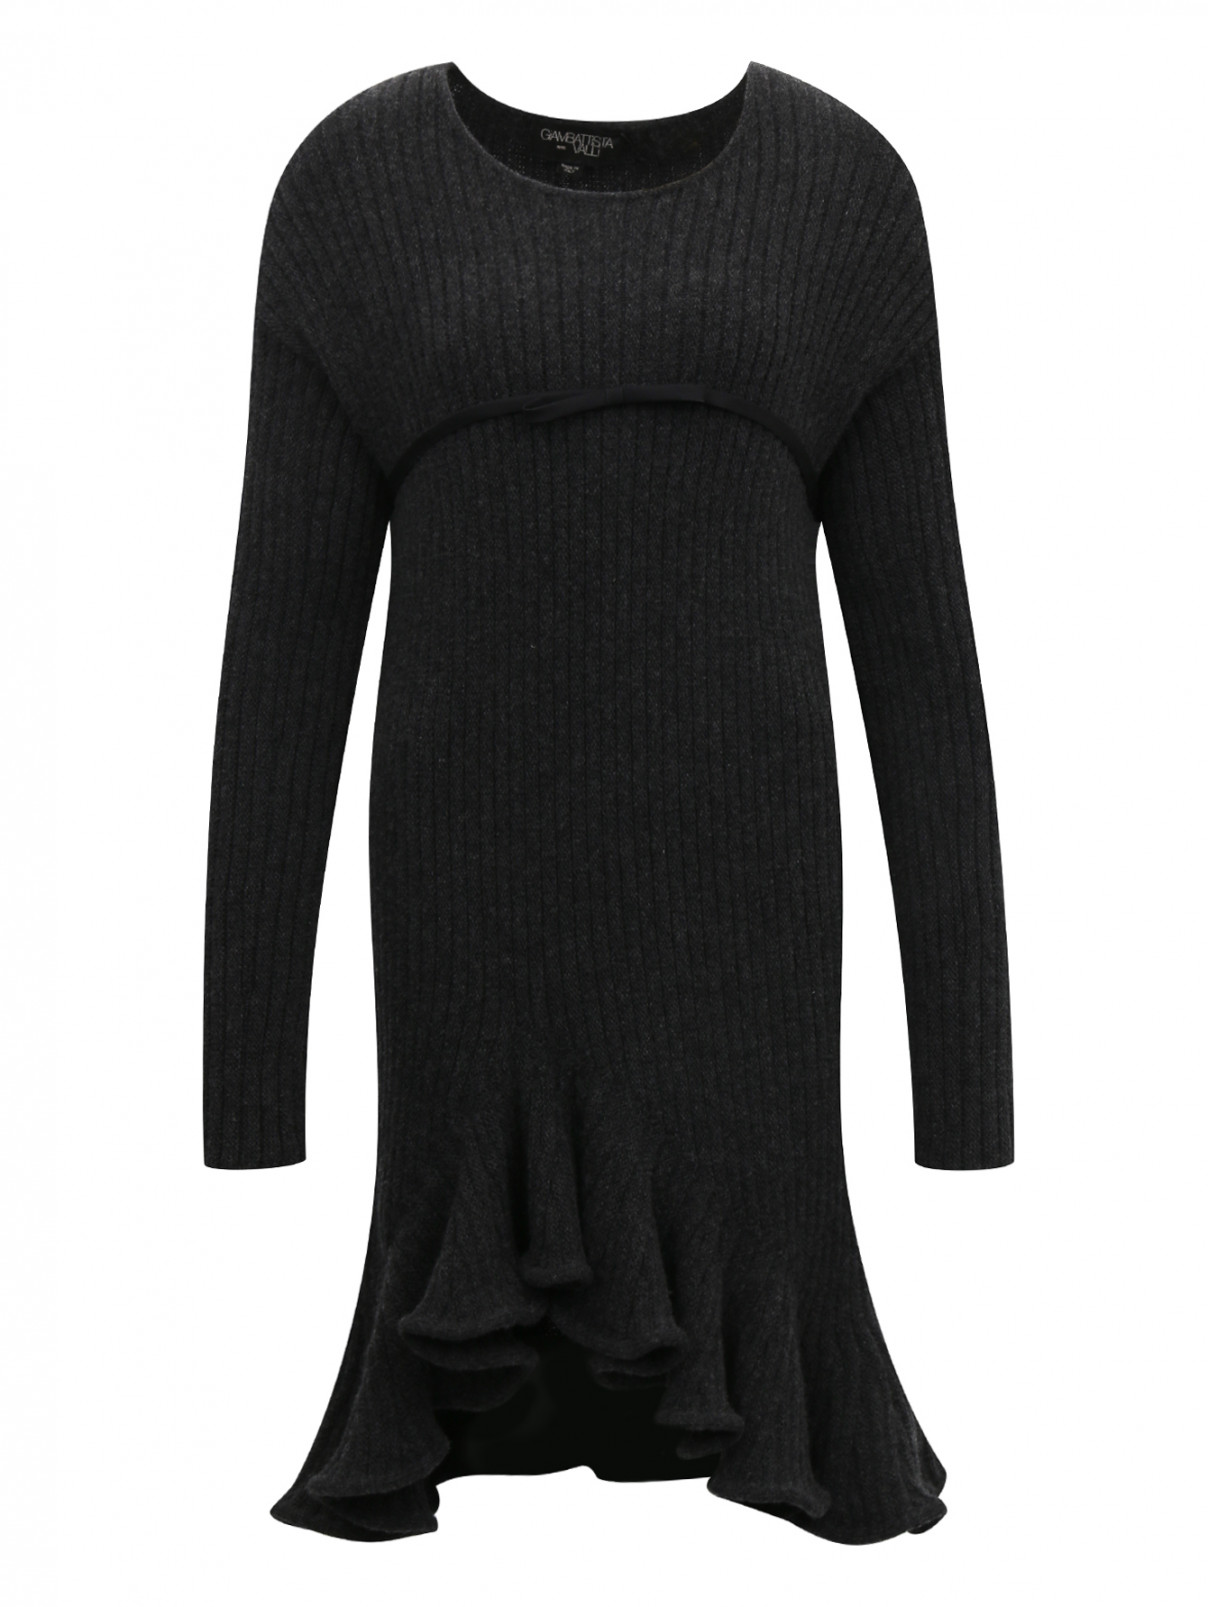 Платье из шерсти с декоративной отделкой Giambattista Valli  –  Общий вид  – Цвет:  Серый